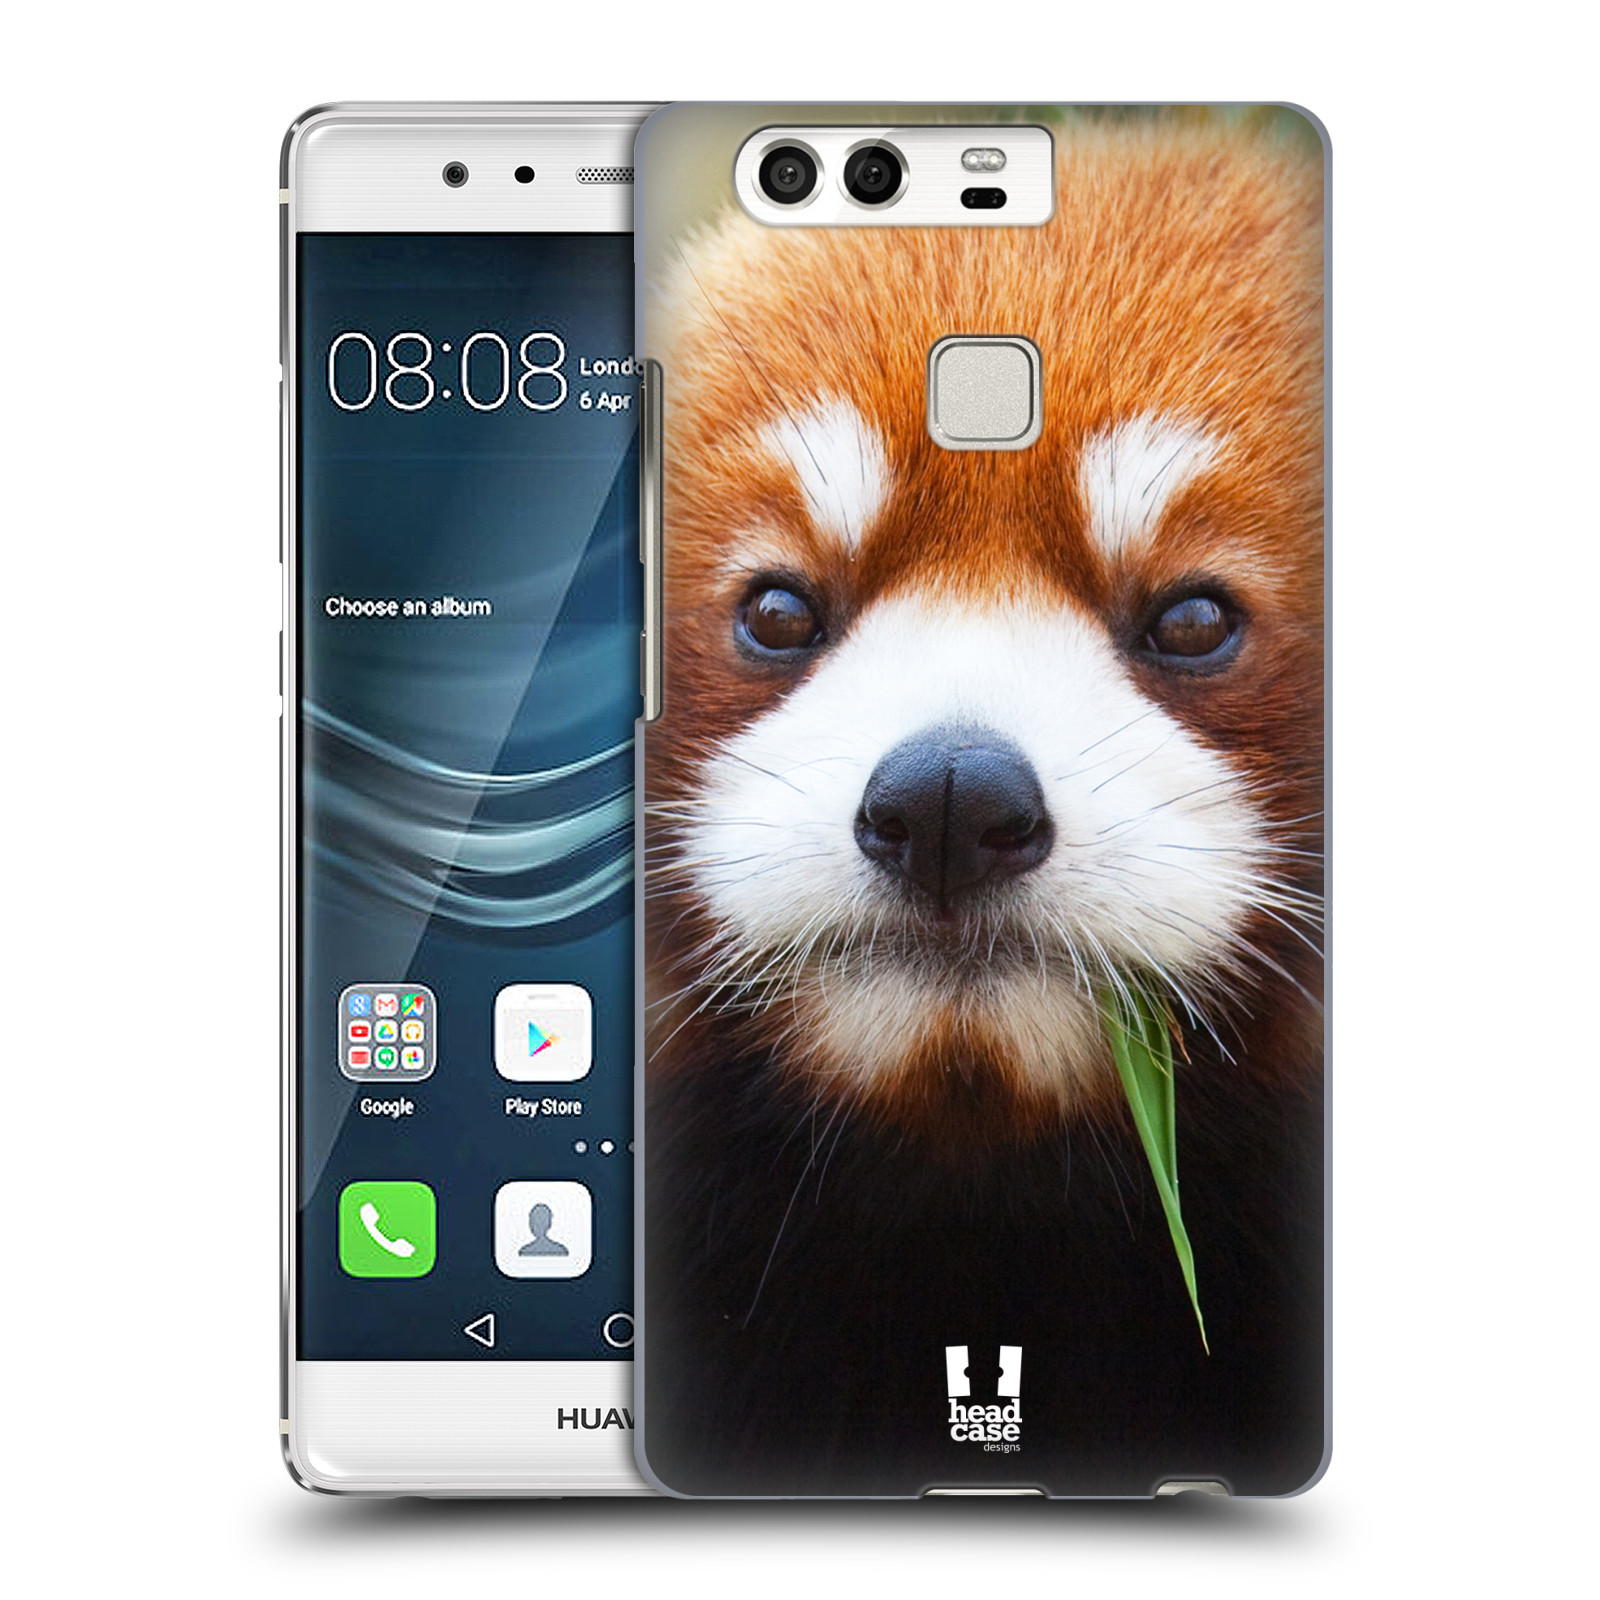 HEAD CASE plastový obal na mobil Huawei P9 / P9 DUAL SIM vzor Divočina, Divoký život a zvířata foto PANDA HNĚDÁ